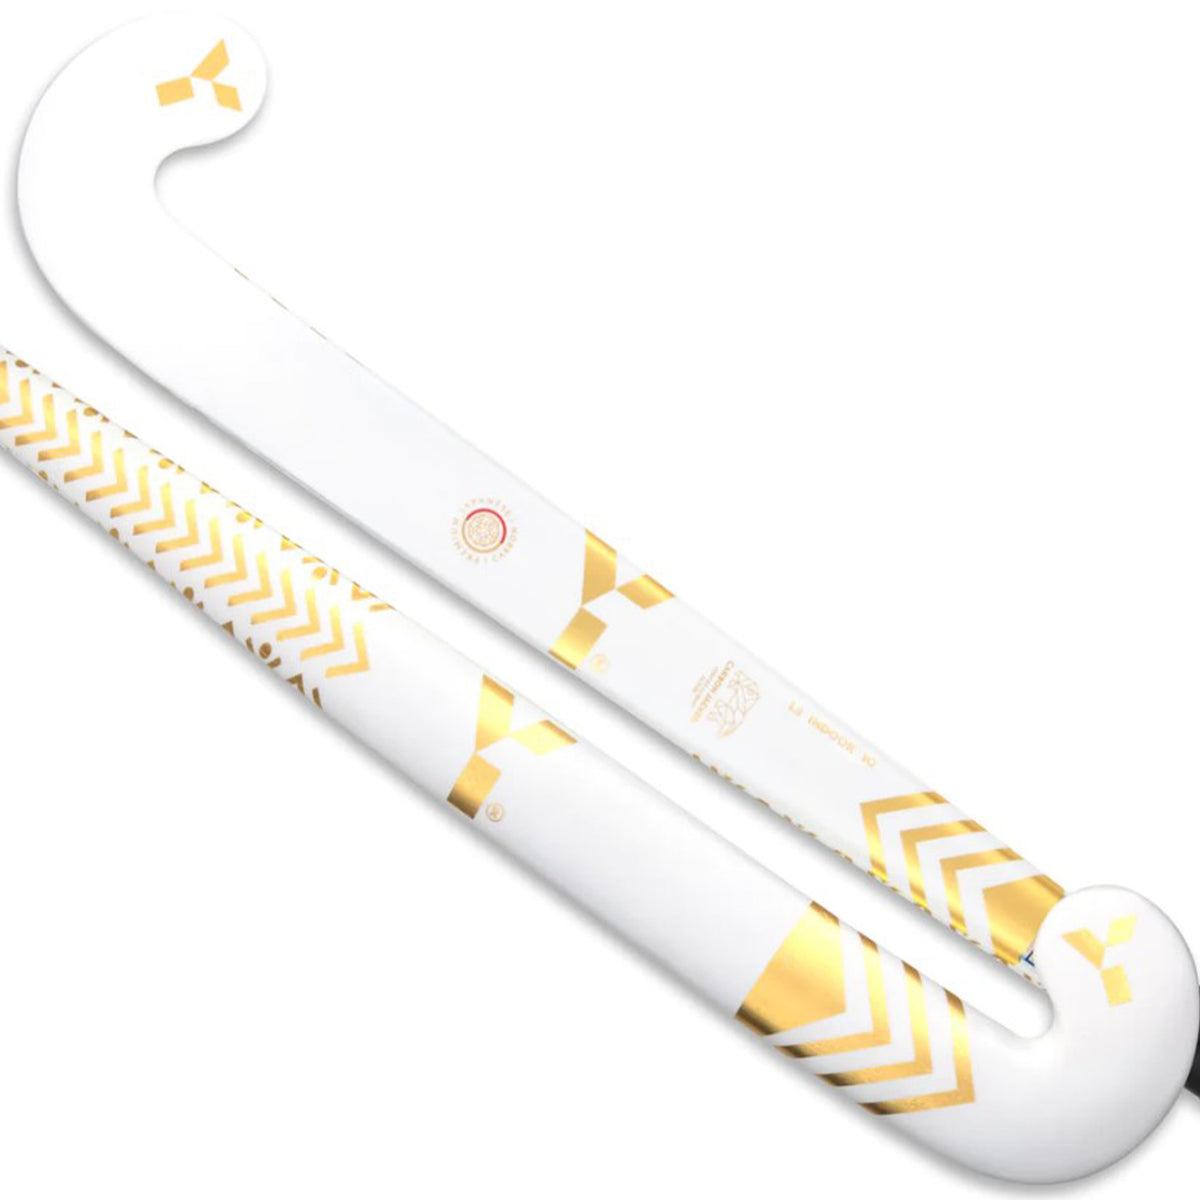 Y1 L8 10 Indoor Hockey Stick 2023